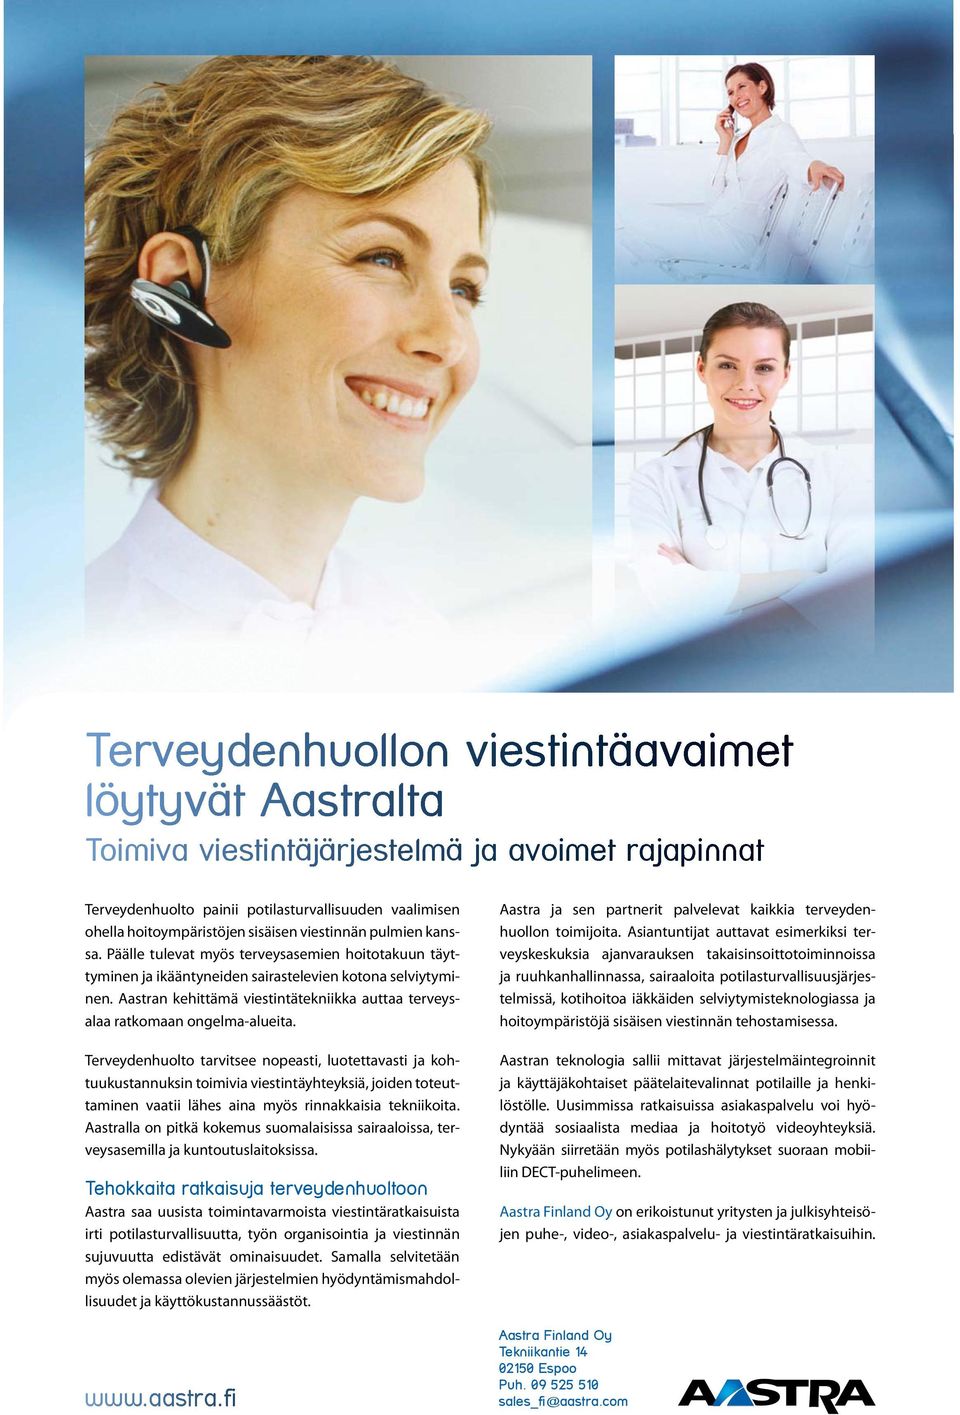 Aastran kehittämä viestintätekniikka auttaa terveysalaa ratkomaan ongelma-alueita.